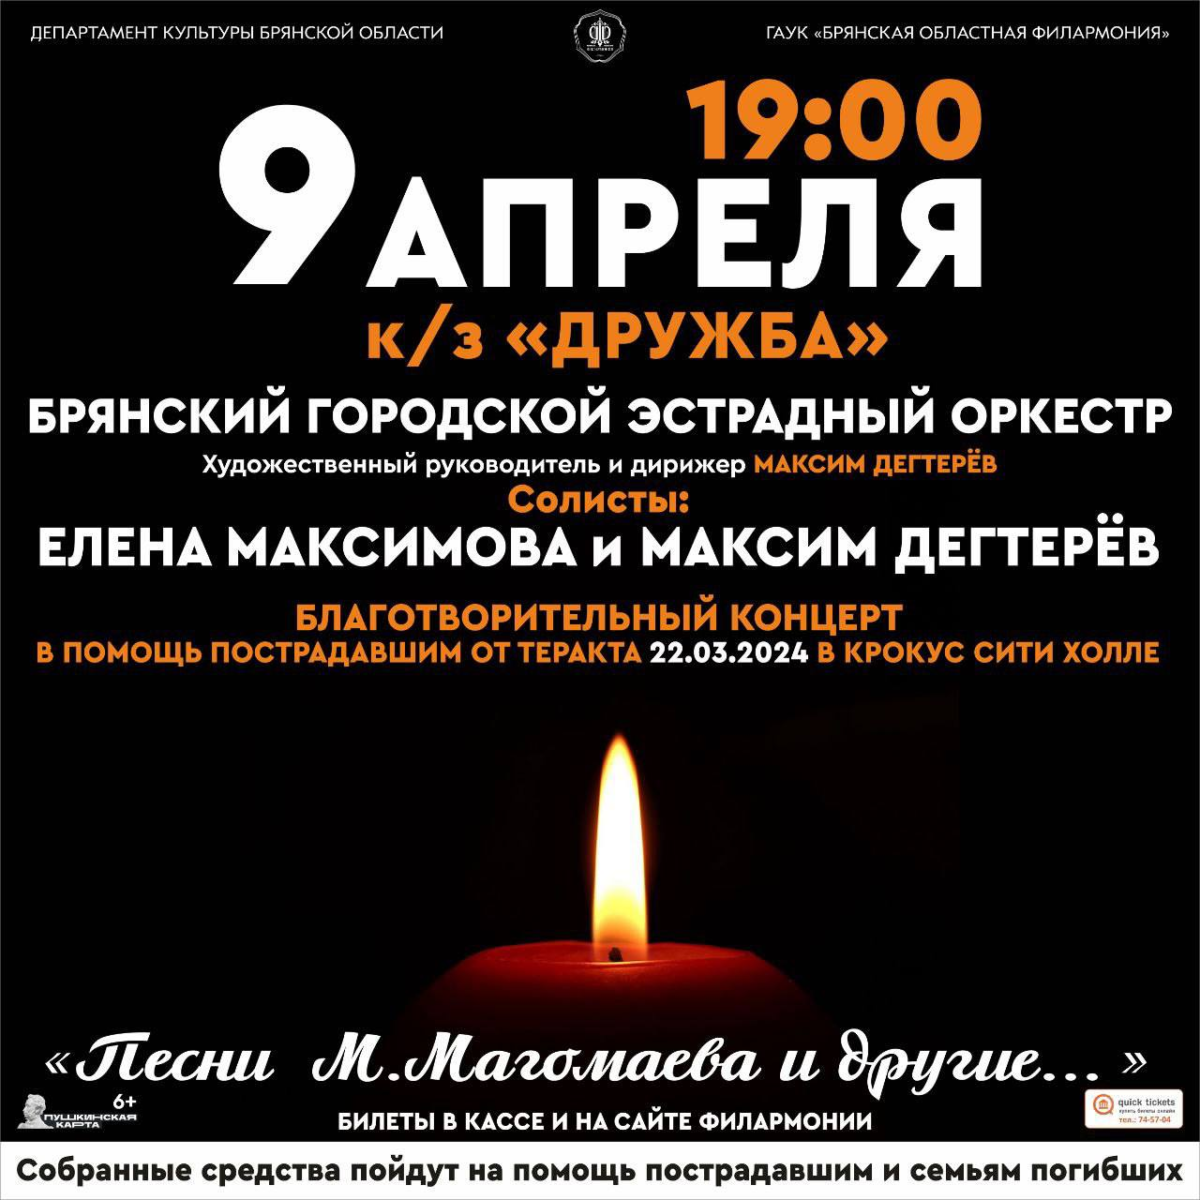 В Брянске состоится благотворительный концерт в память о погибших при теракте в “Крокусе”